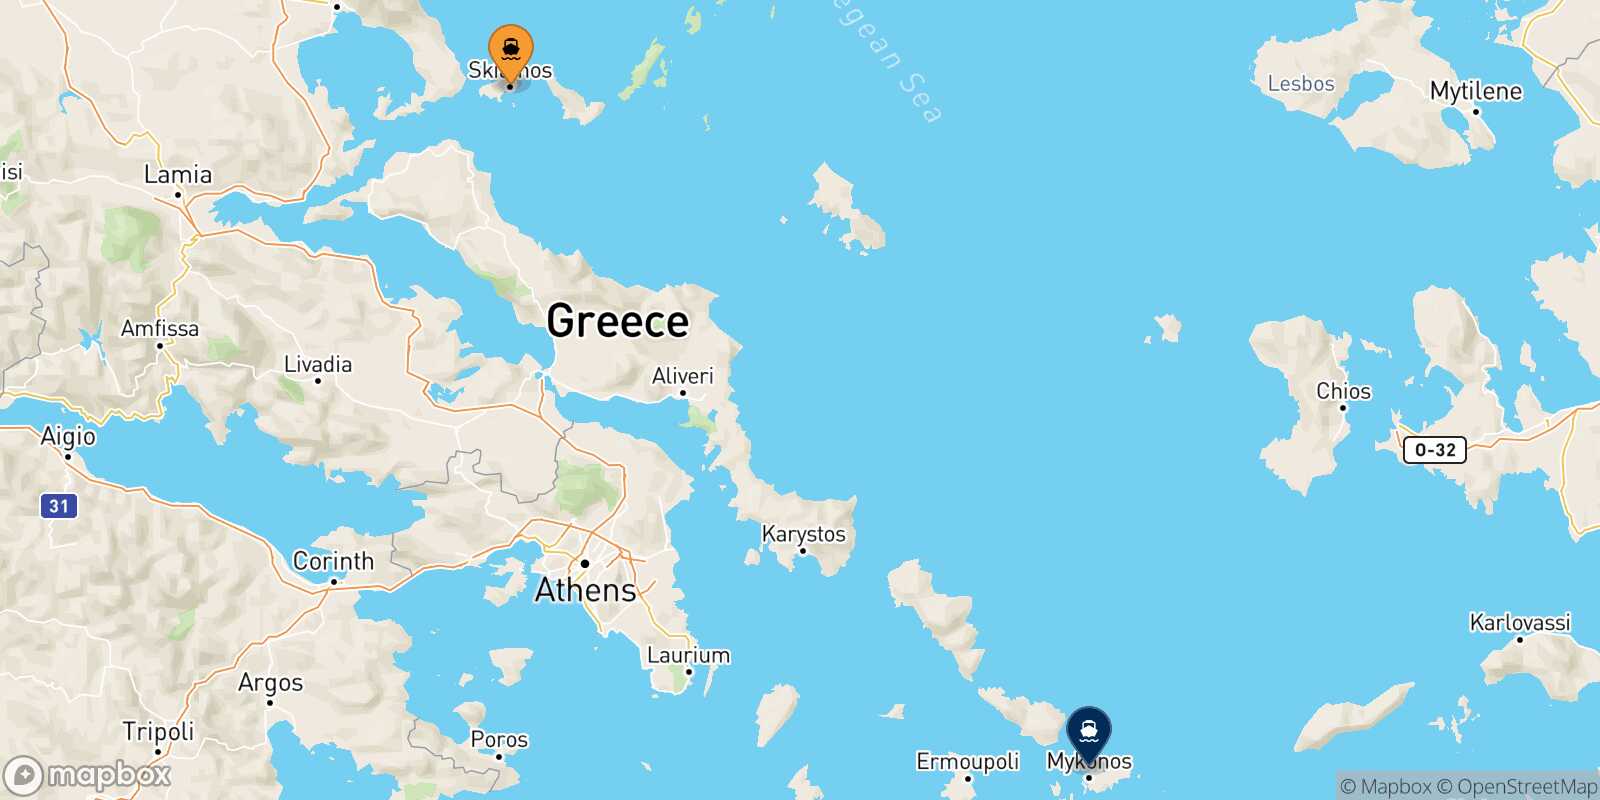 Mappa della rotta Skiathos Mykonos